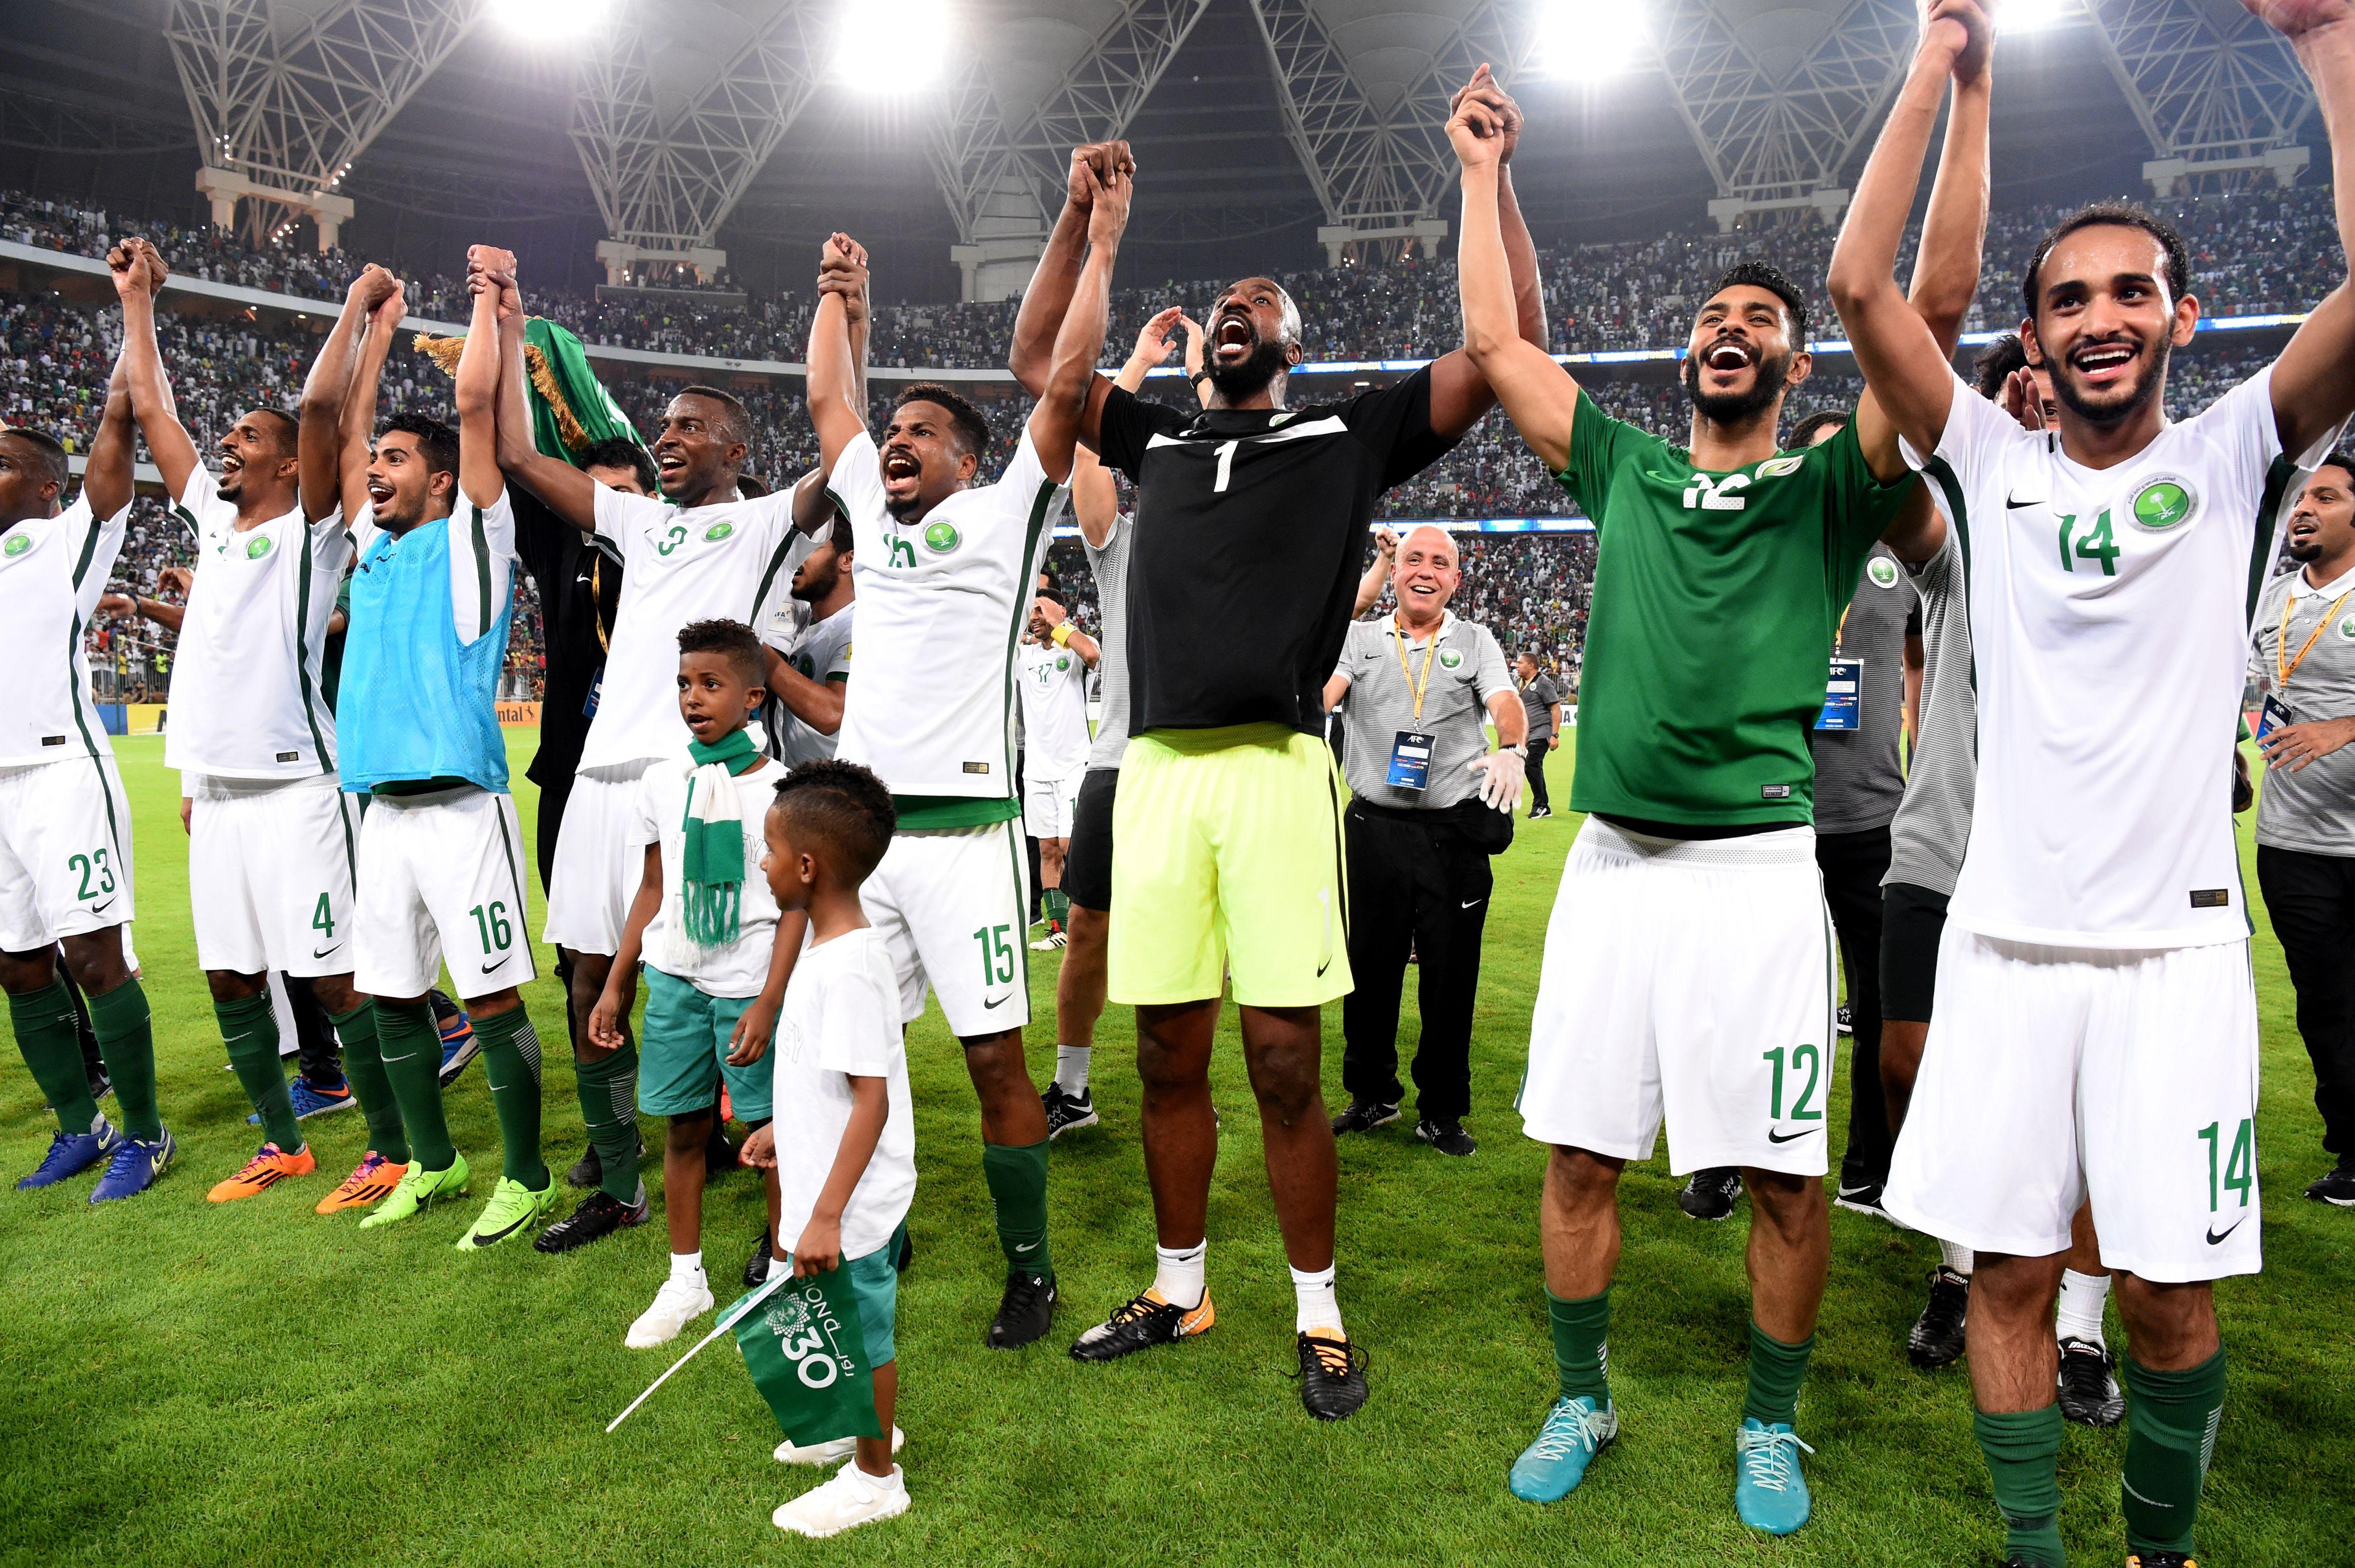 Saudi Arabia World Cup 2018 preview: Lineup, tactics, predictions